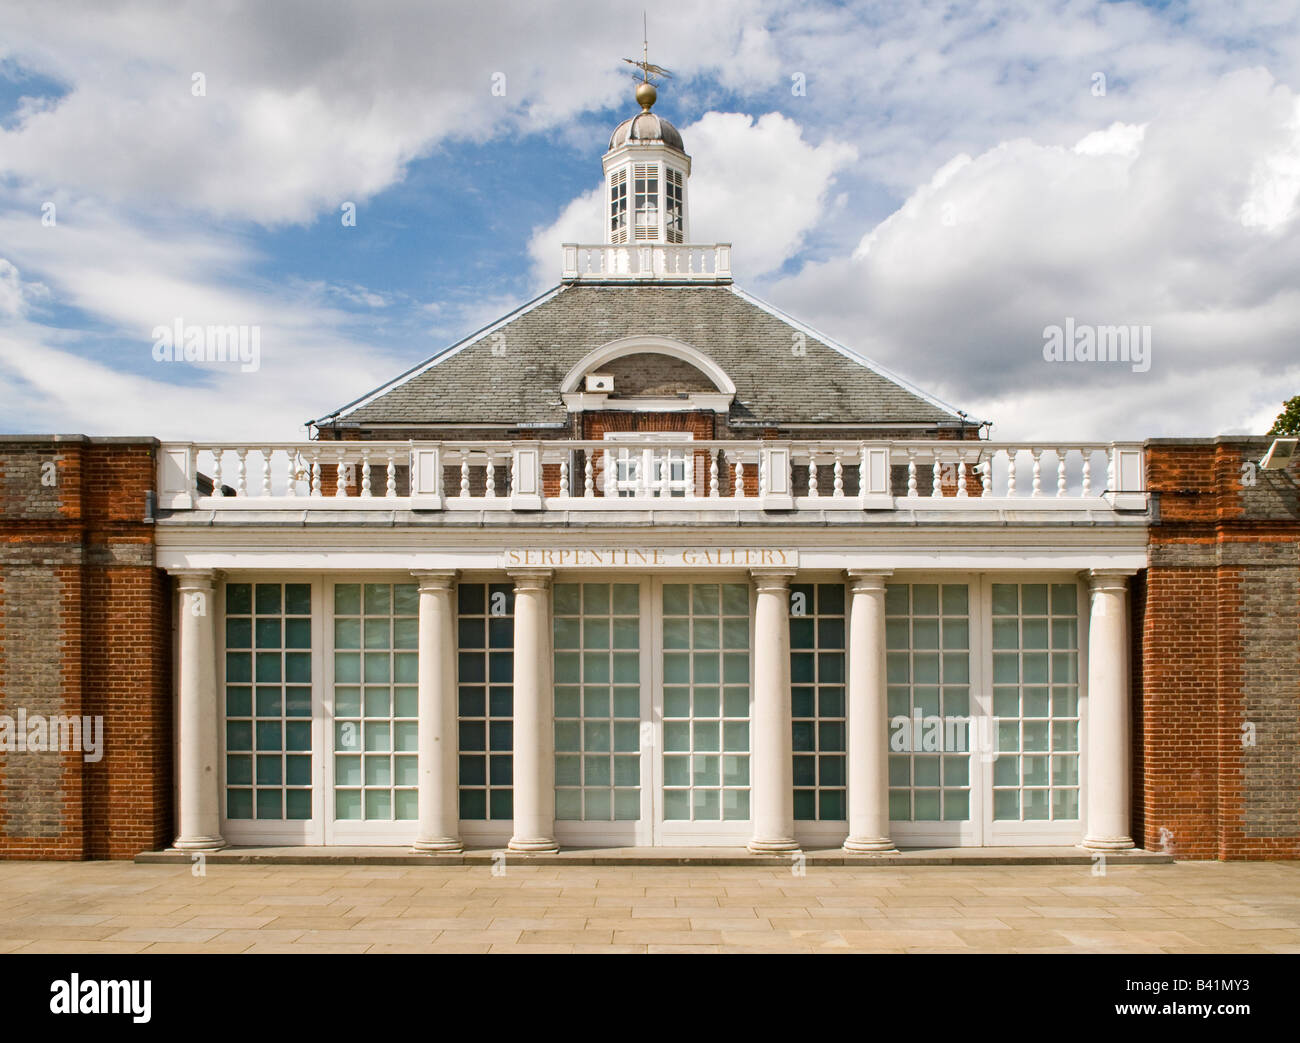 Neo classica Il Grade ii Listed Serpentine Gallery in Kensington Gardens, London, Regno Unito Foto Stock